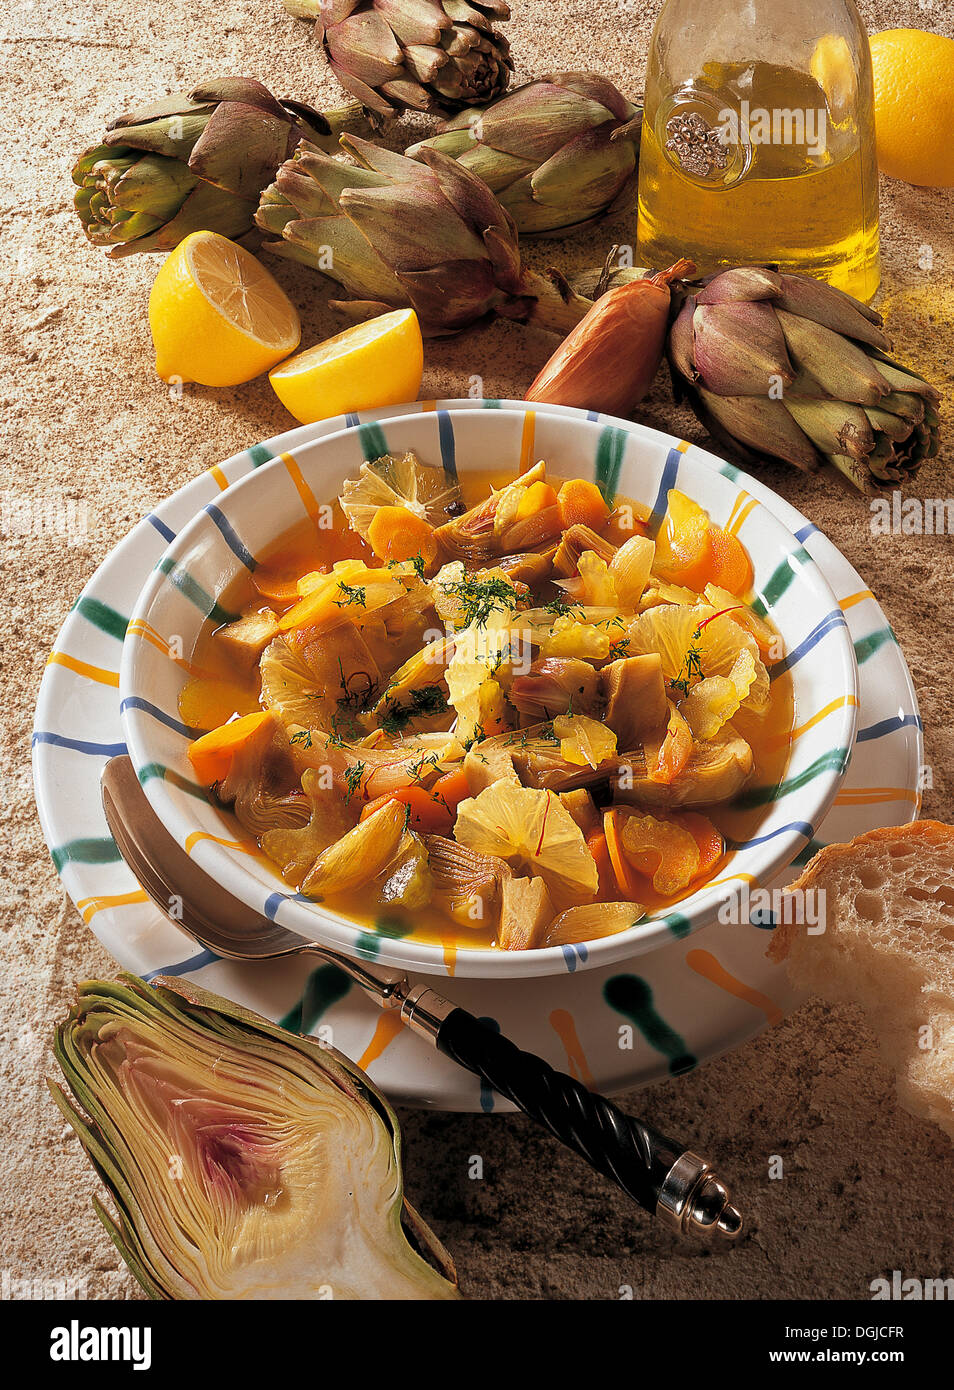 Artichoke stew, Tunisia. Stock Photo